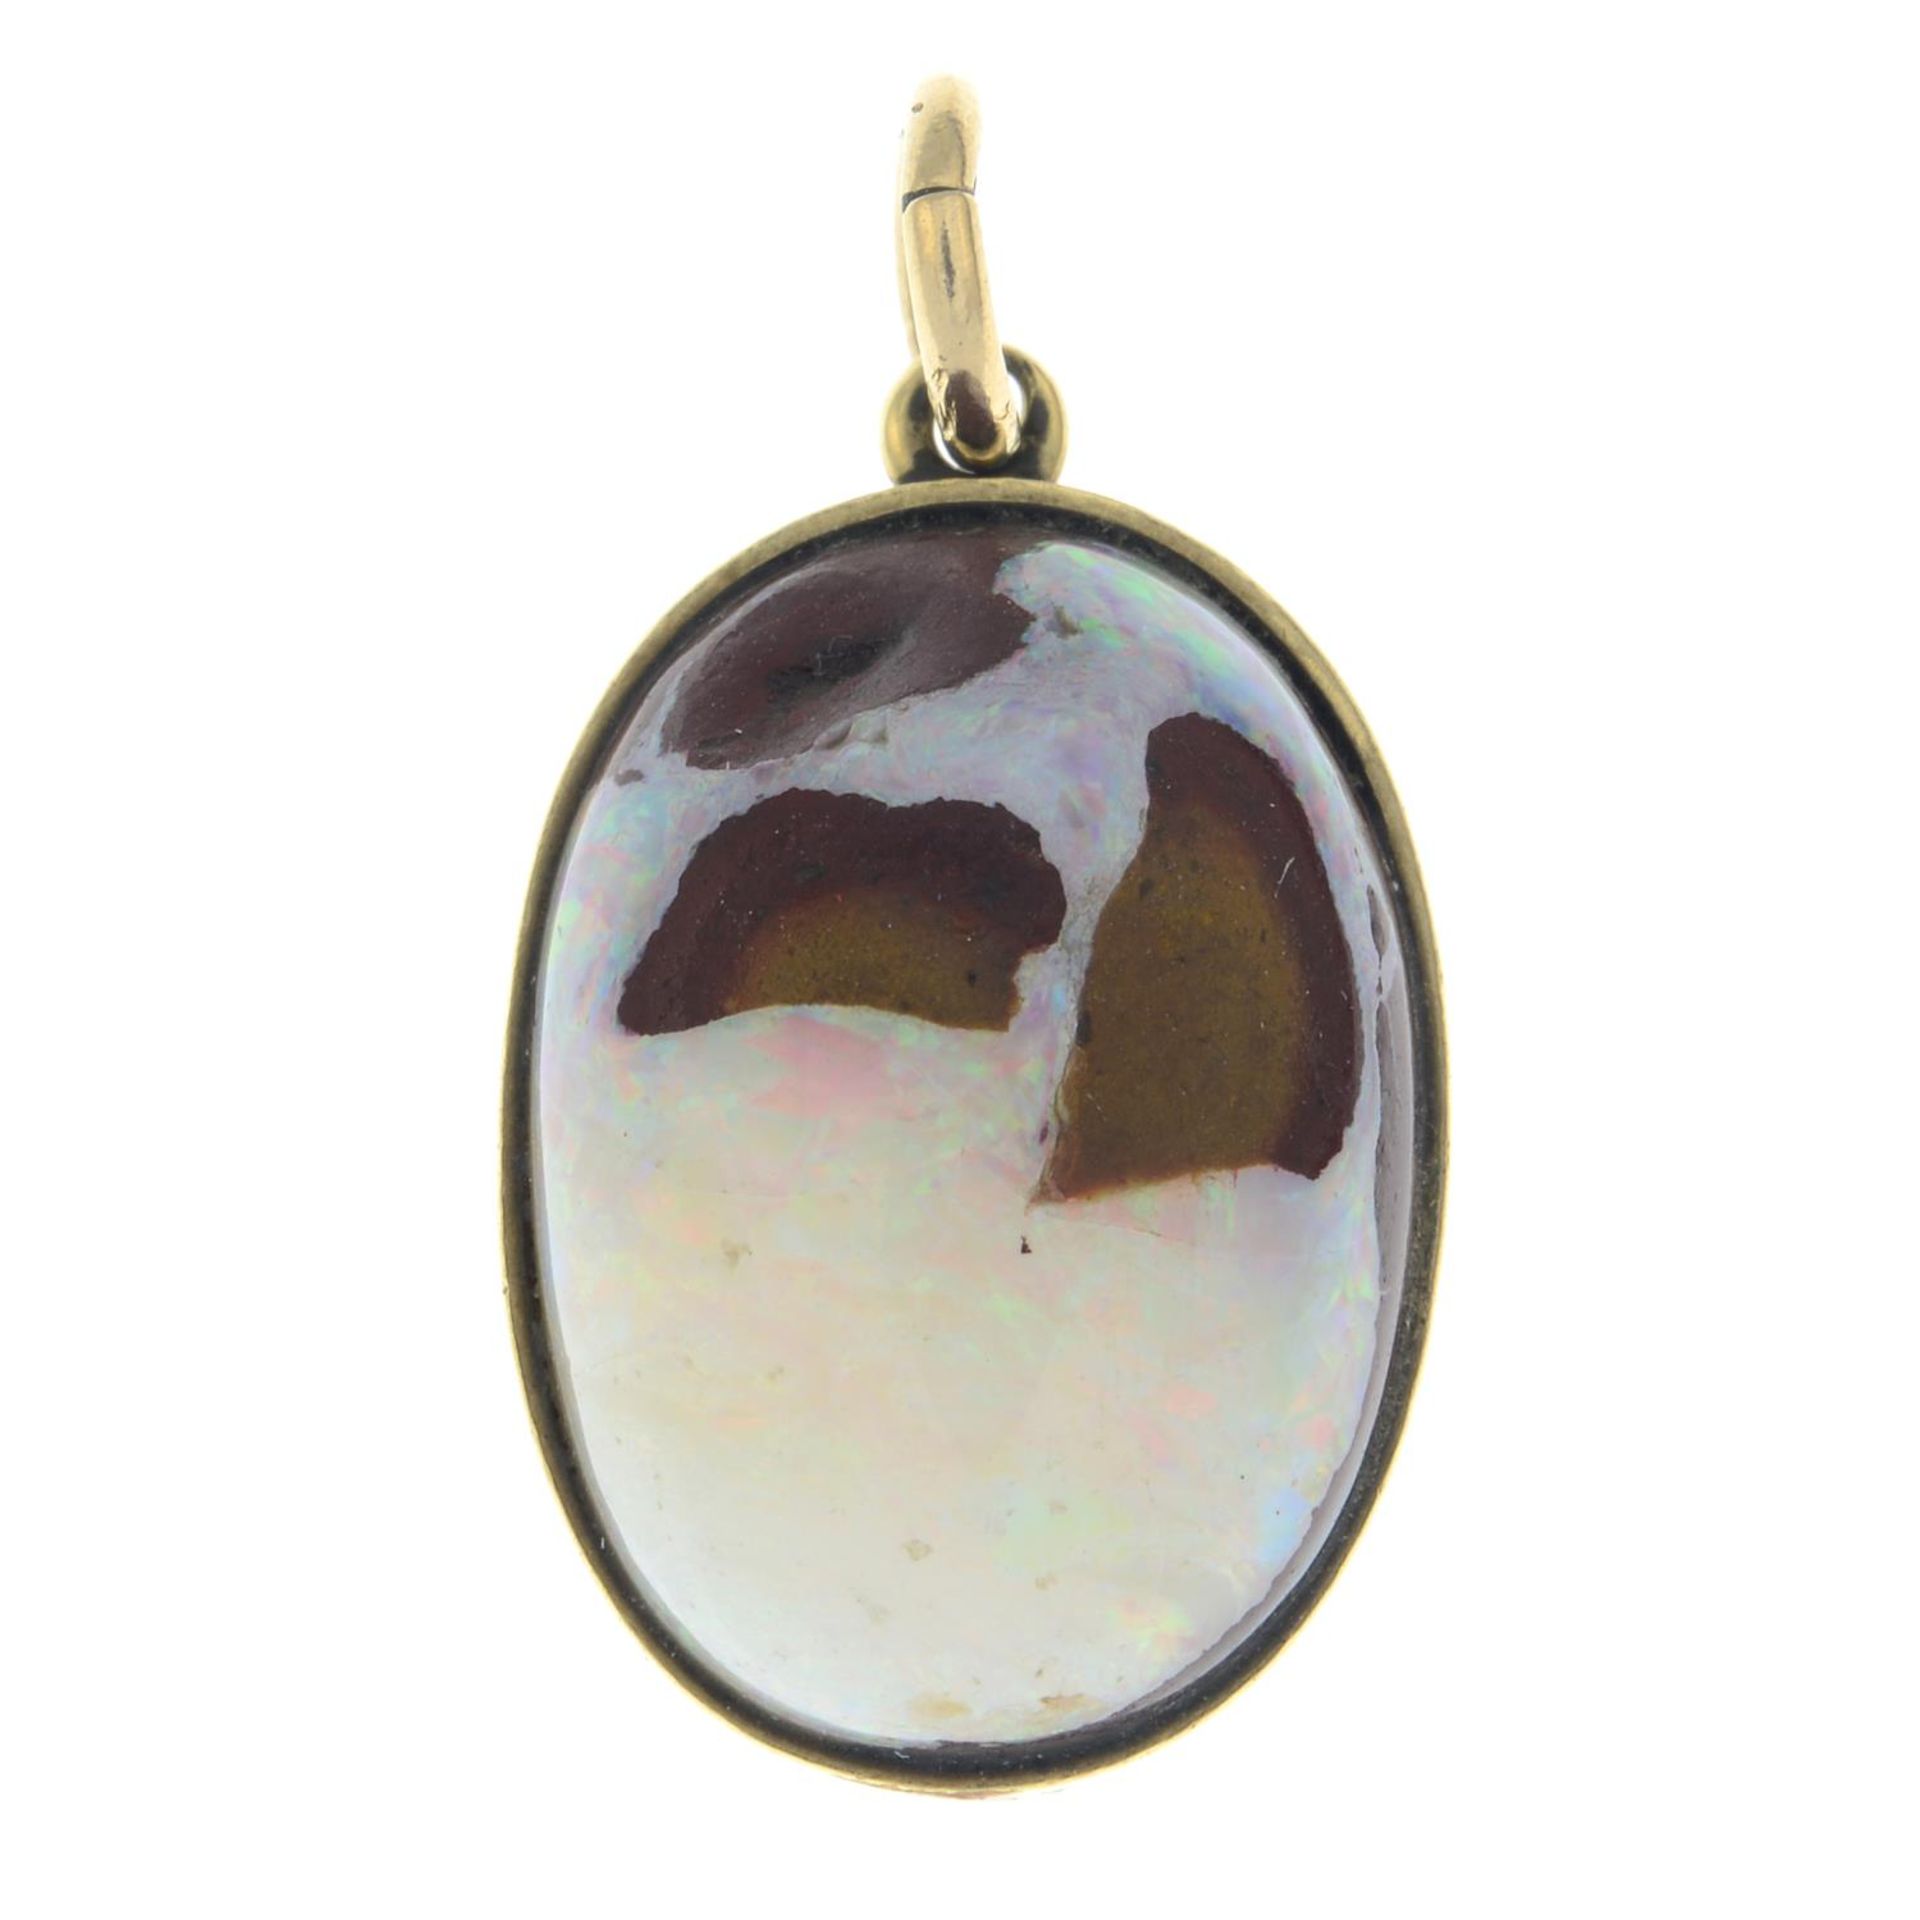 A boulder opal pendant.Length 2.5cms.